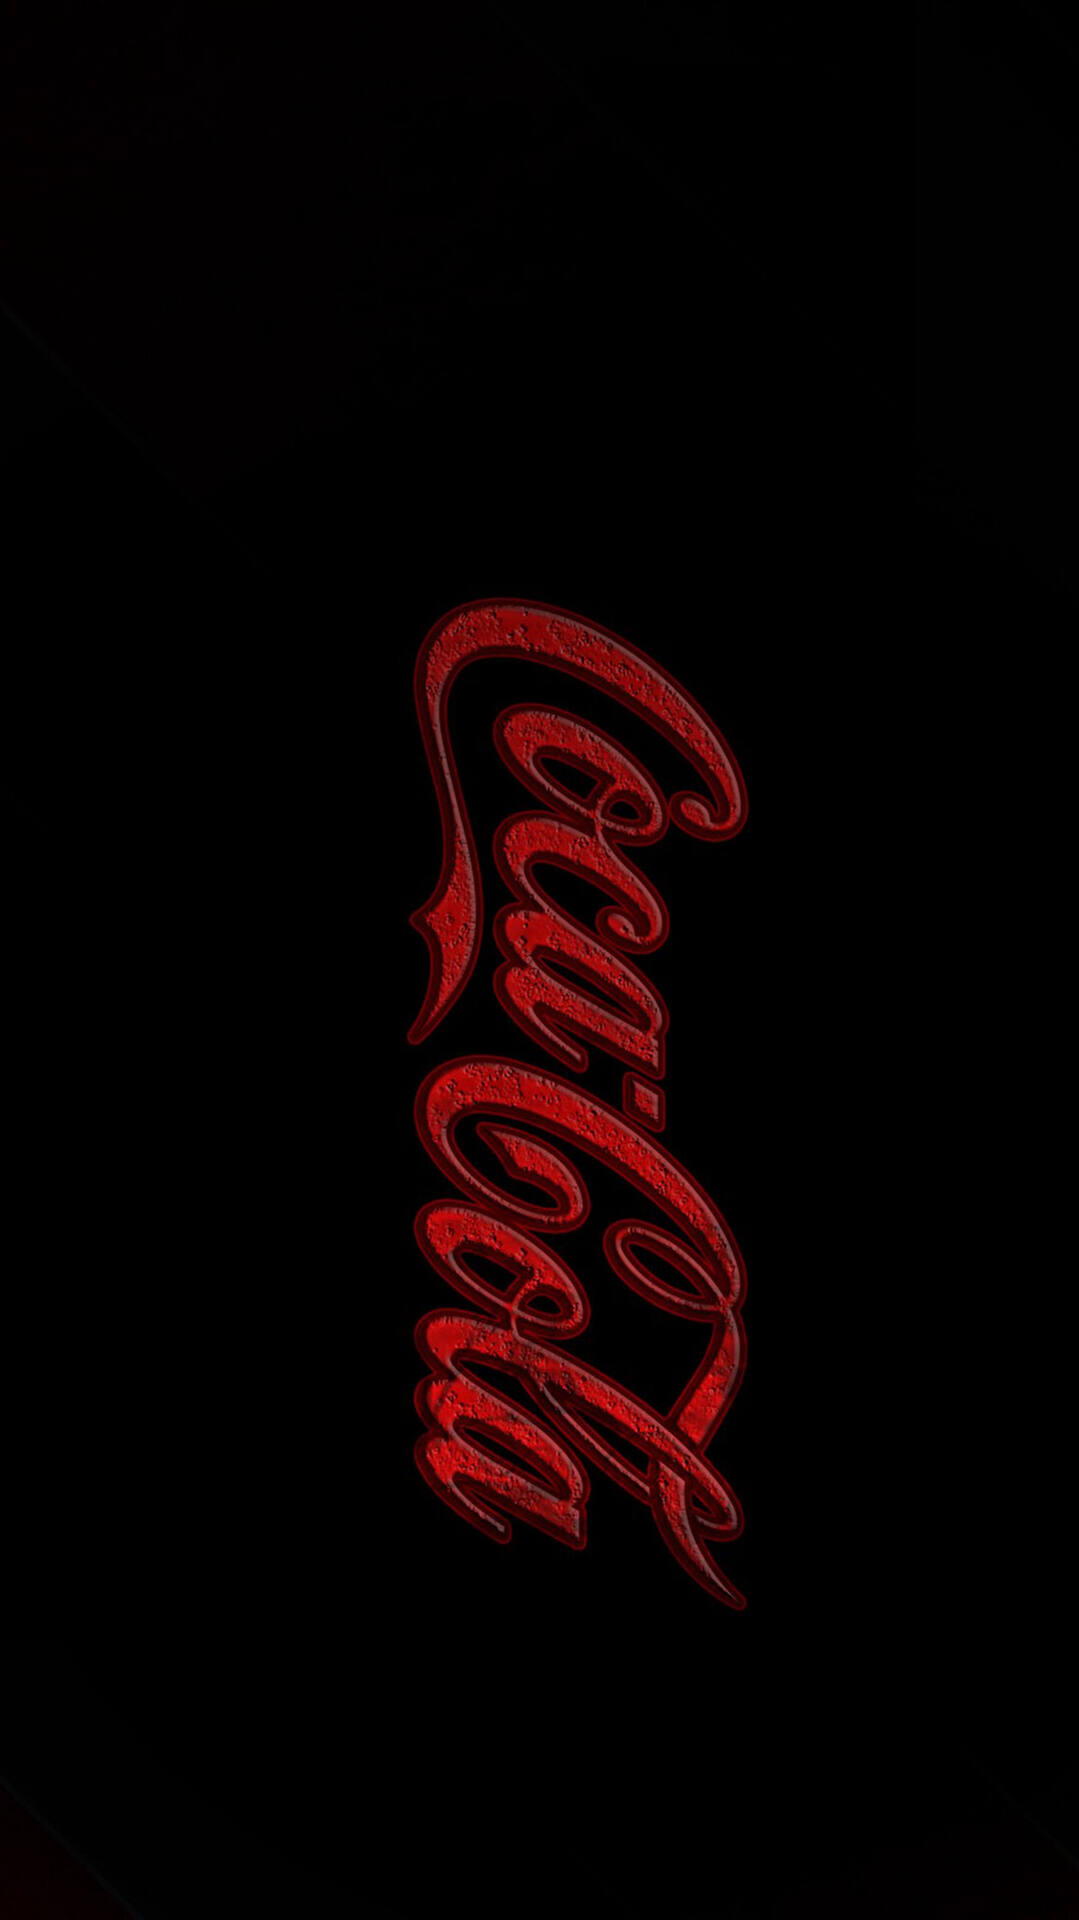 可乐你爱喝吗？可口可乐品牌LOGO设计手机壁纸第4张壁纸